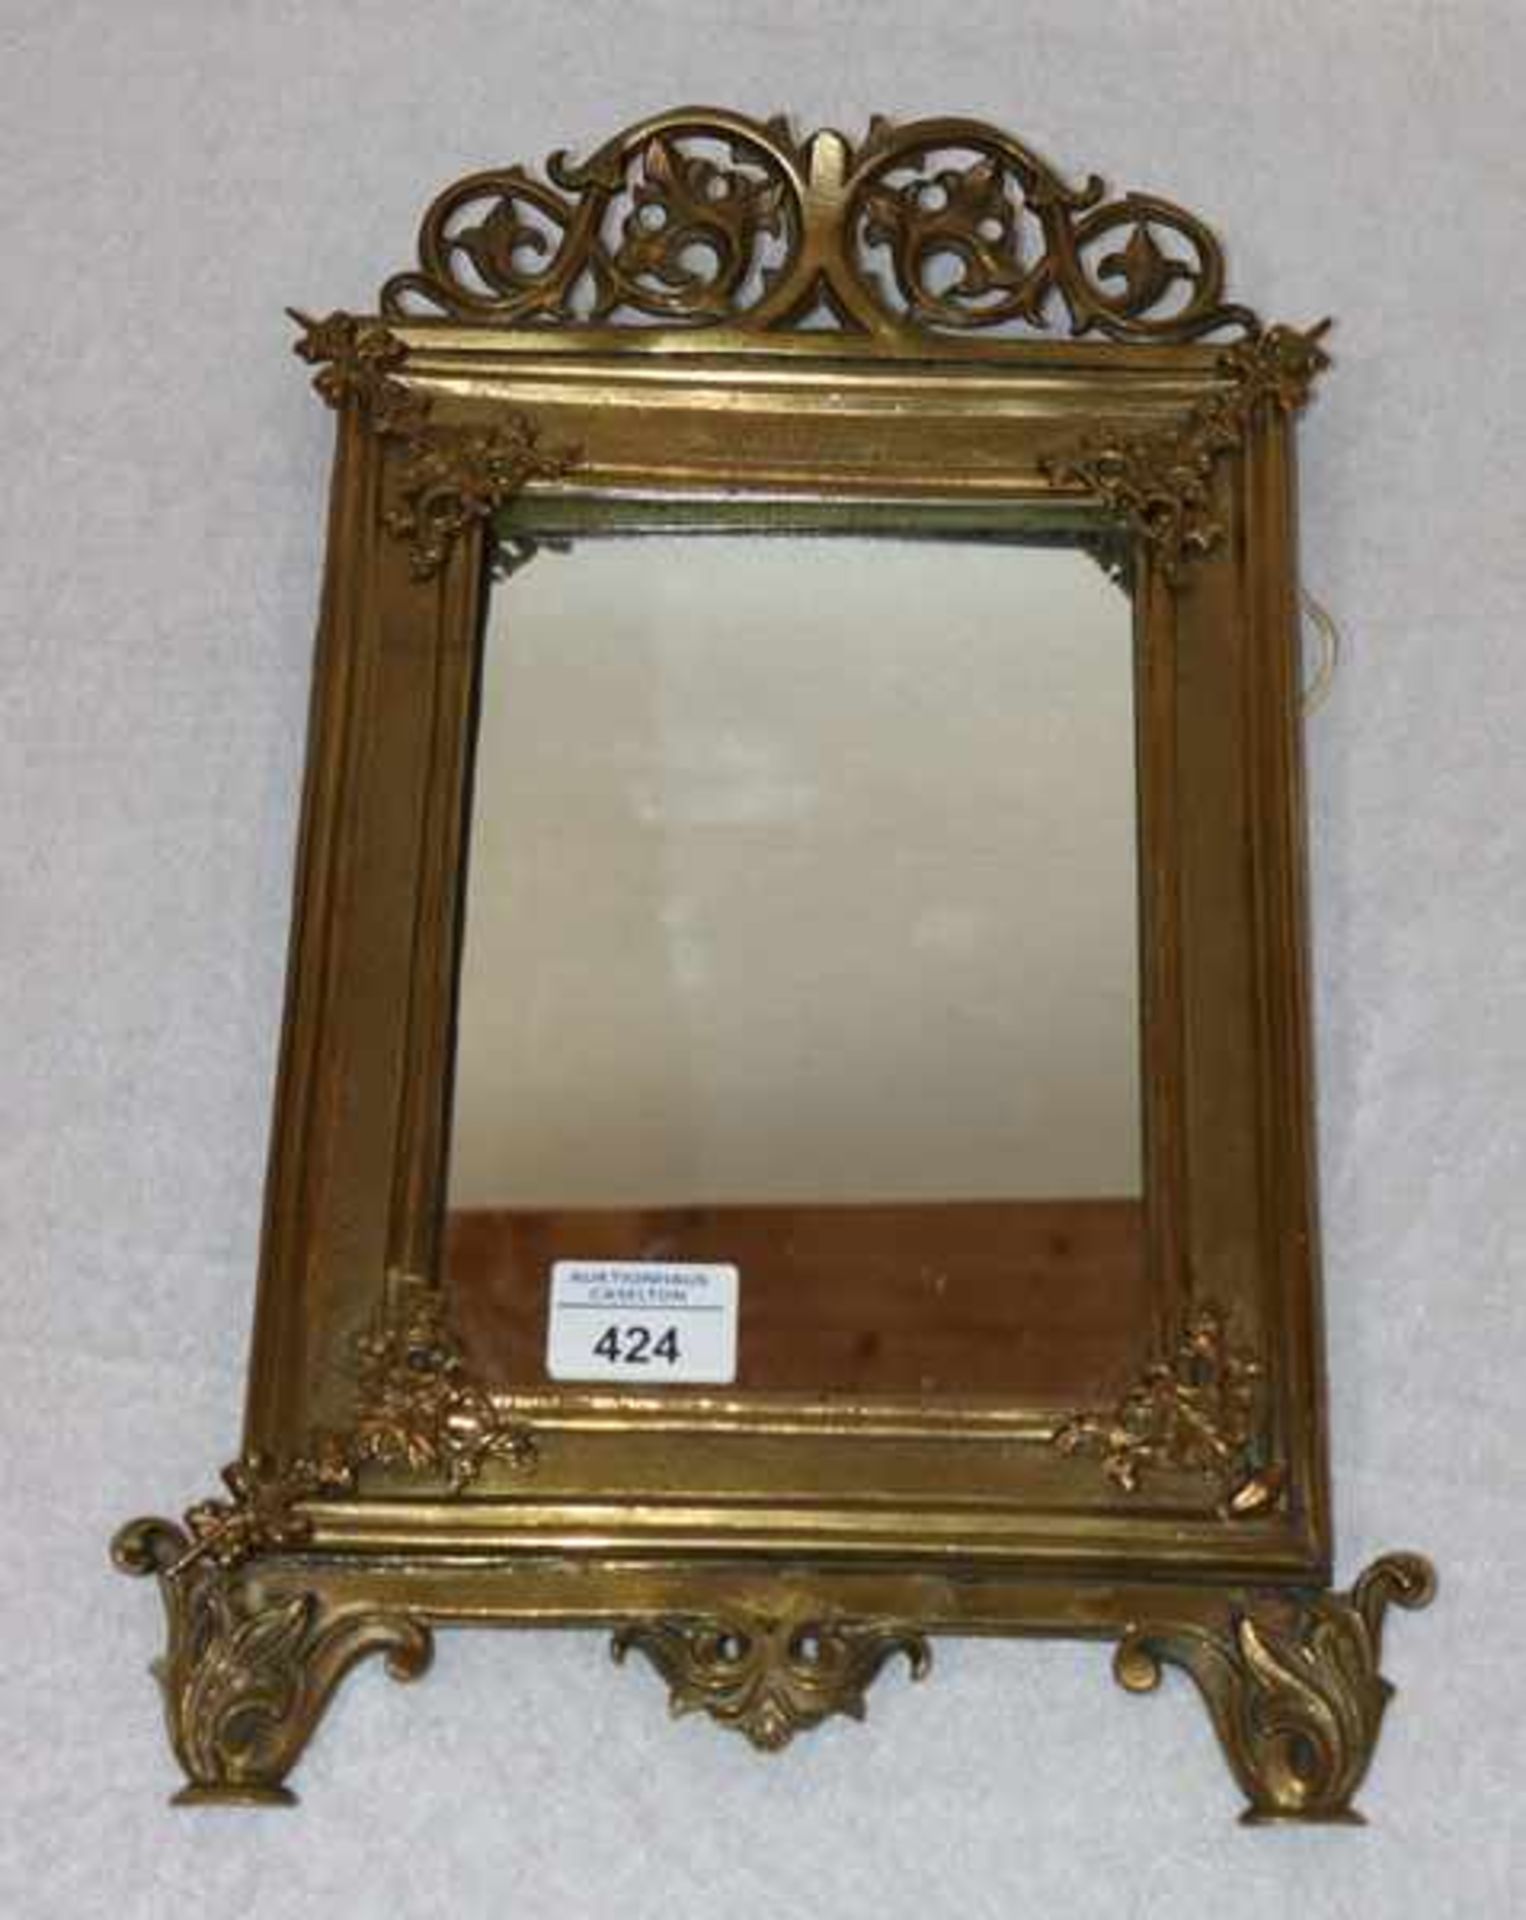 Tischspiegel aus Messing mit reliefiertem Dekor, teils beschädigt, nicht komplett, H 40 cm, B 27 cm